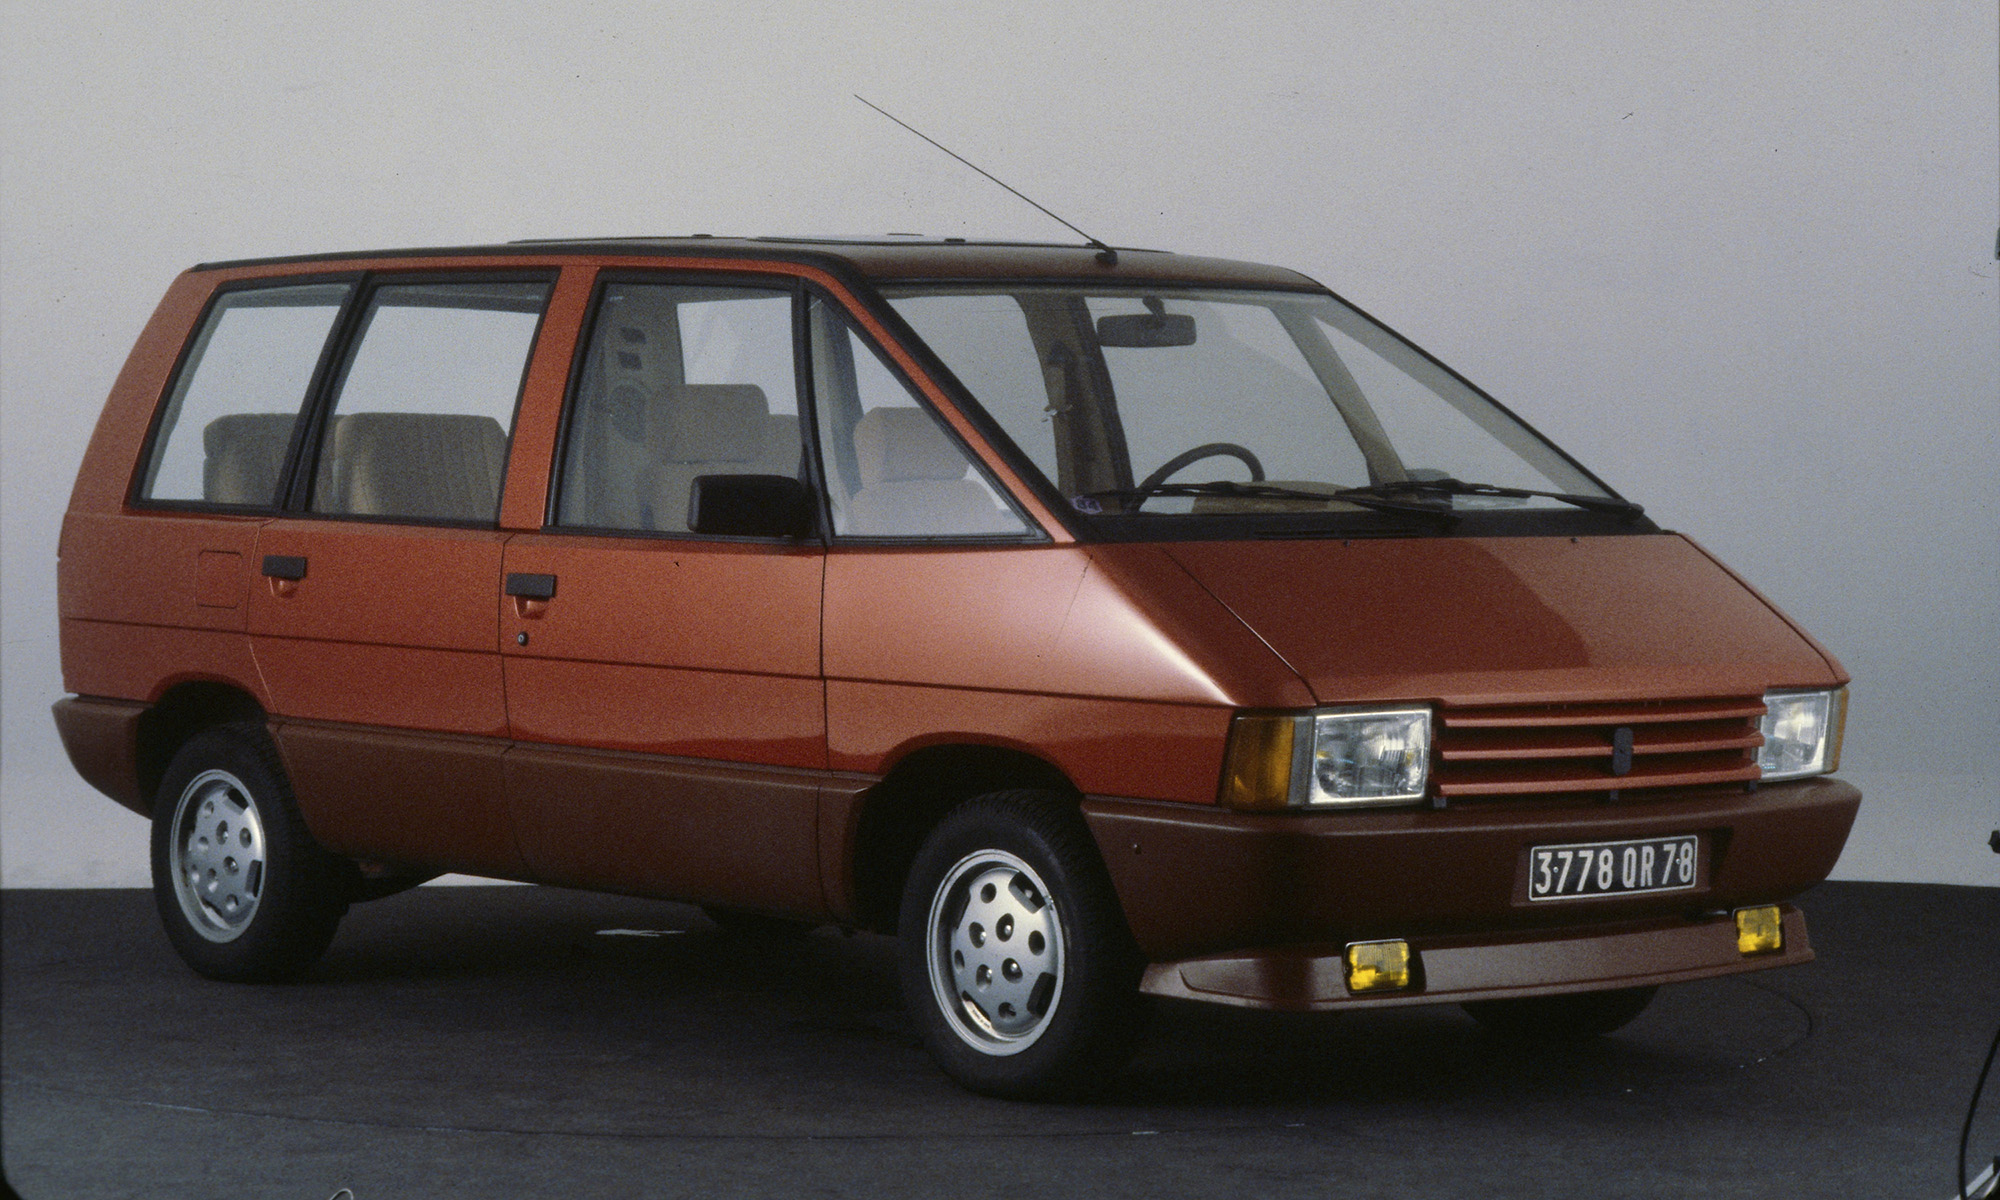 El nuevo monovolumen de Renault podría inspirar su diseño en el Espace de primera generación.